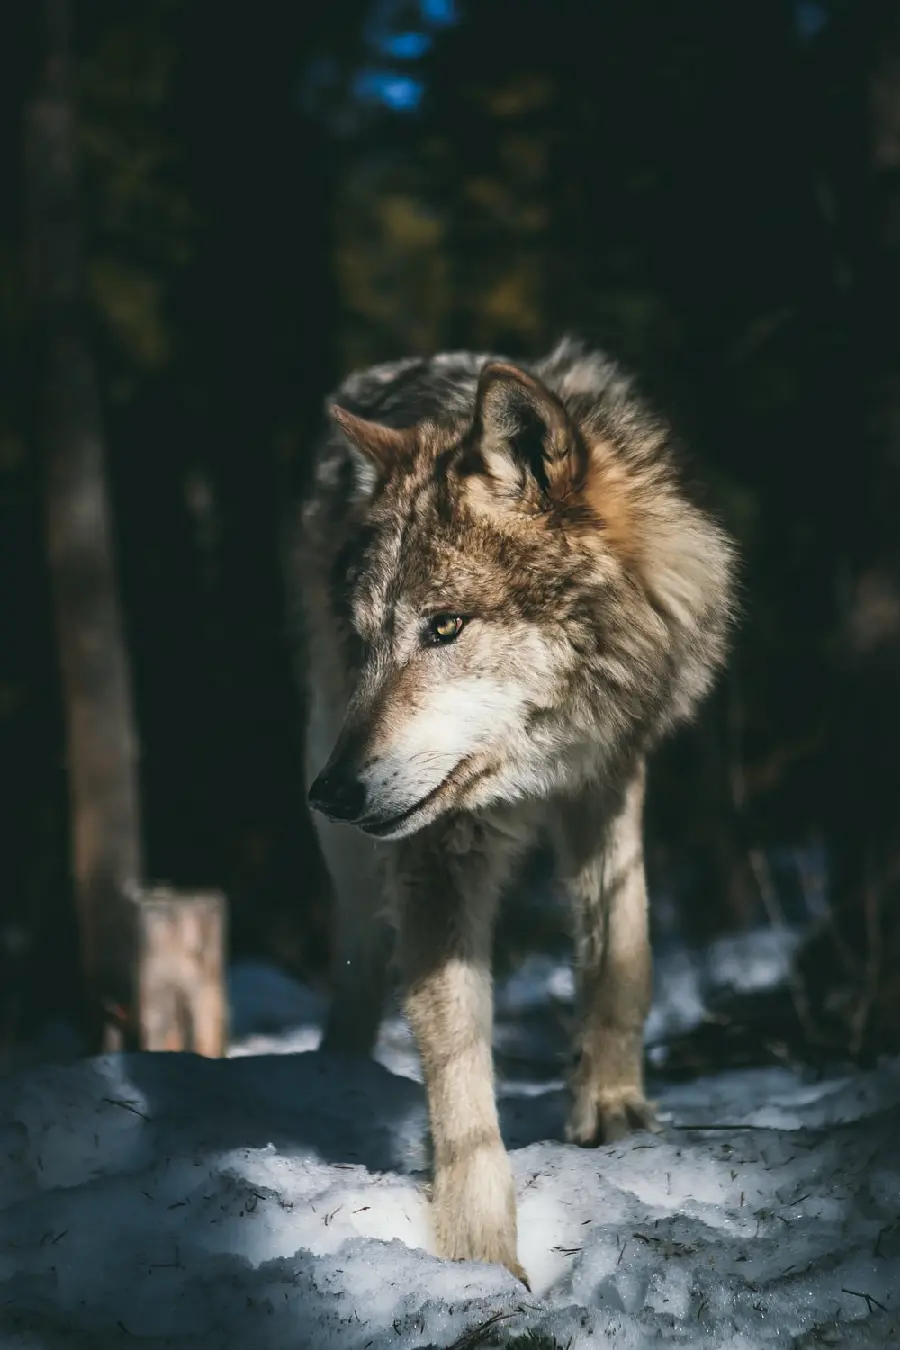 تصویر زیبا گرگ جنگل با کیفیت بالا